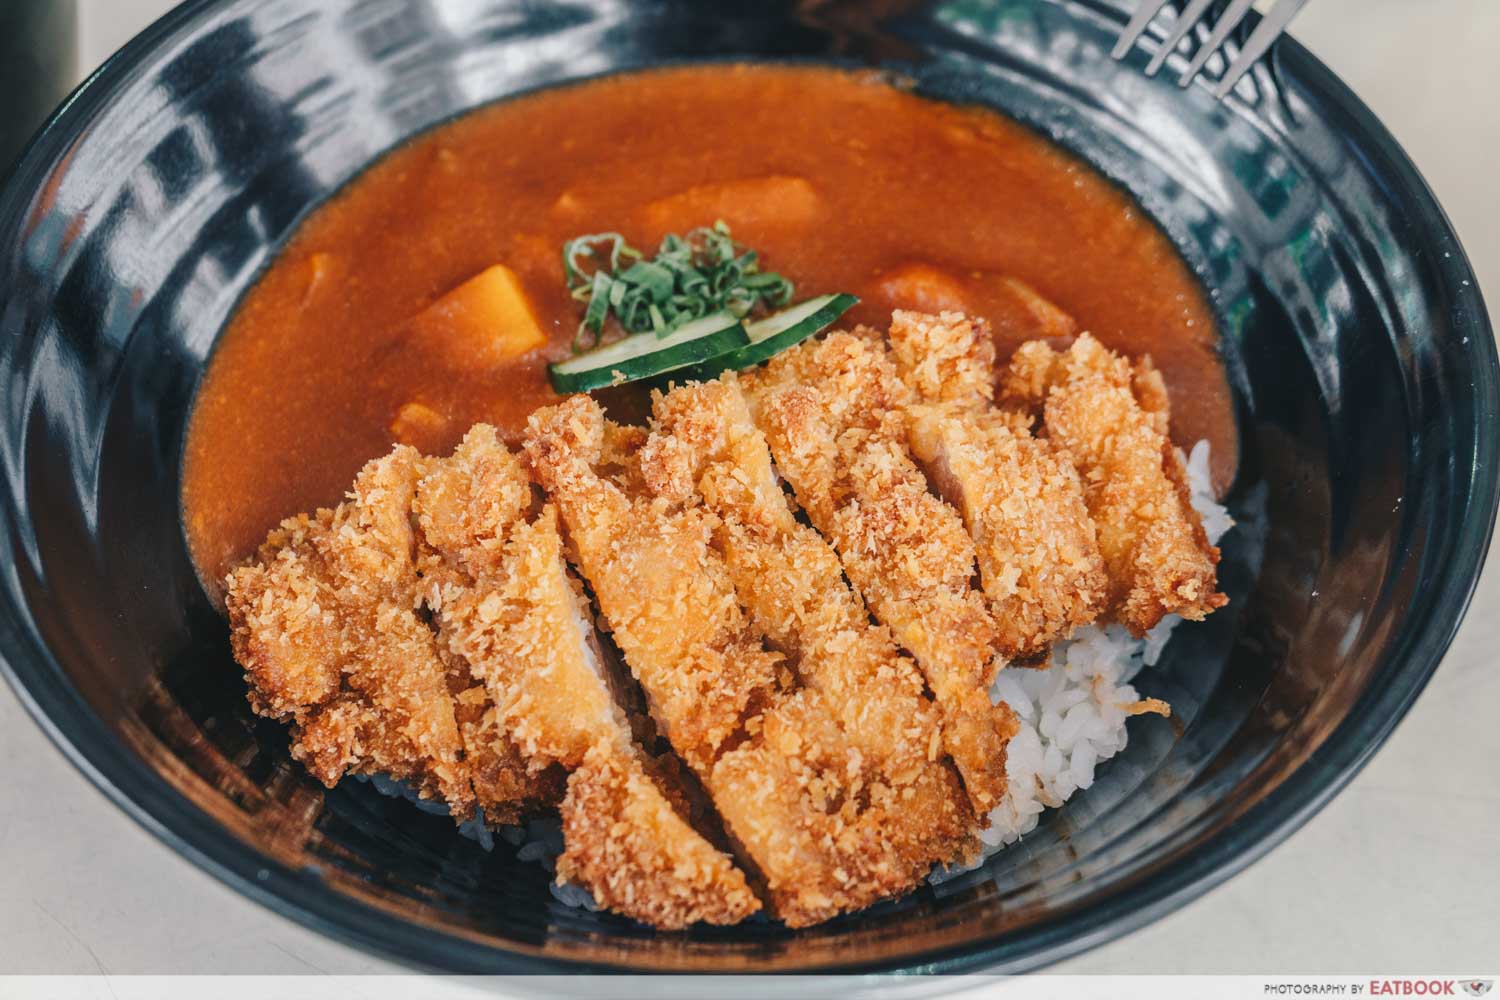 Oiishii Corner - Chicken katsu curry don intro shot